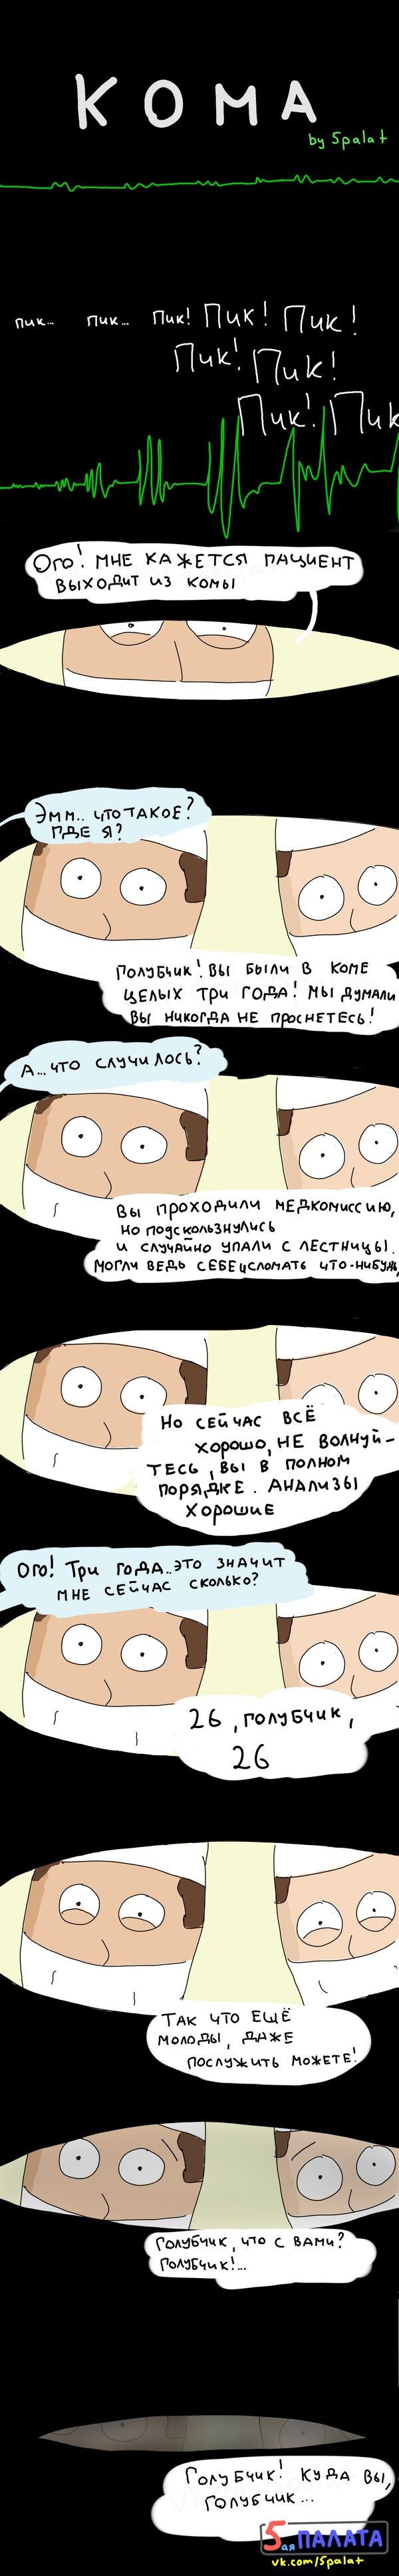 Смешные комиксы (20 картинок) 19.08.2014